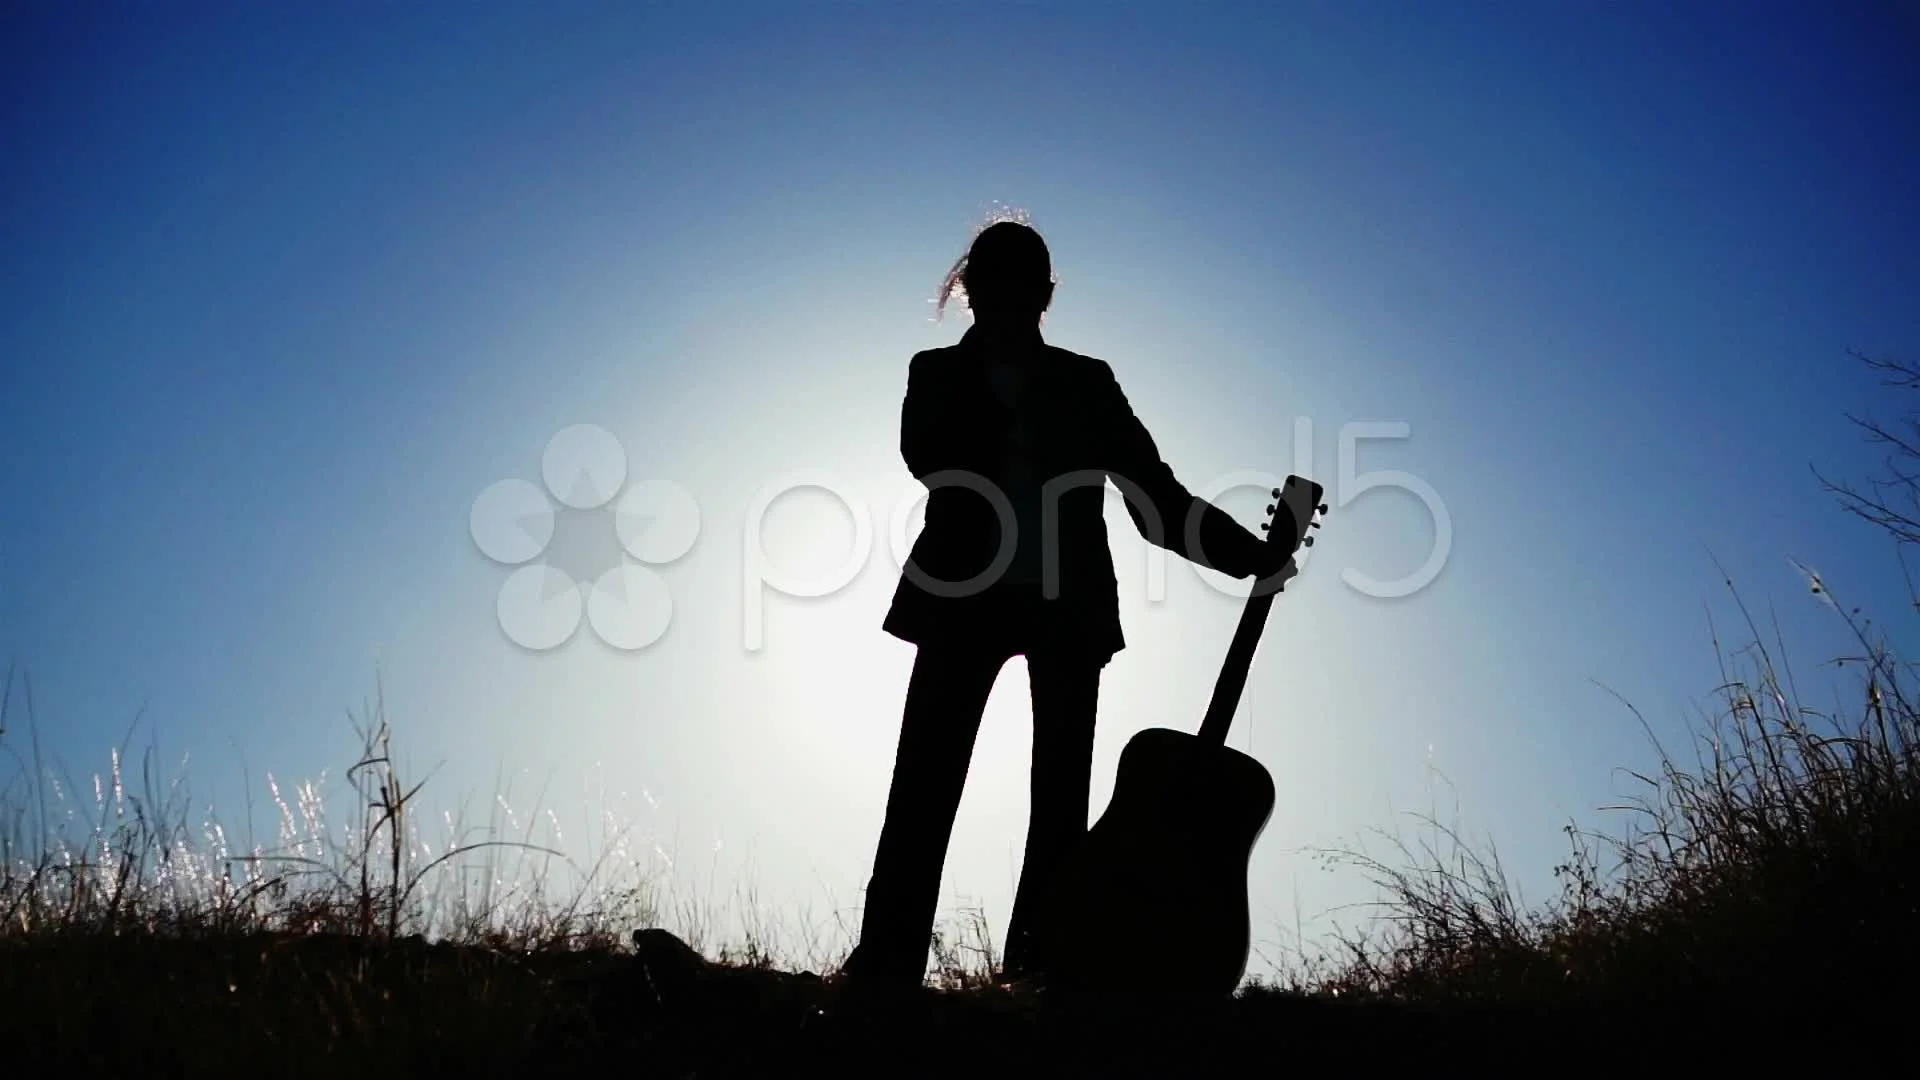 HD wallpaper: man playing guitar on black background, person playing  acoustic guitar | Wallpaper Flare